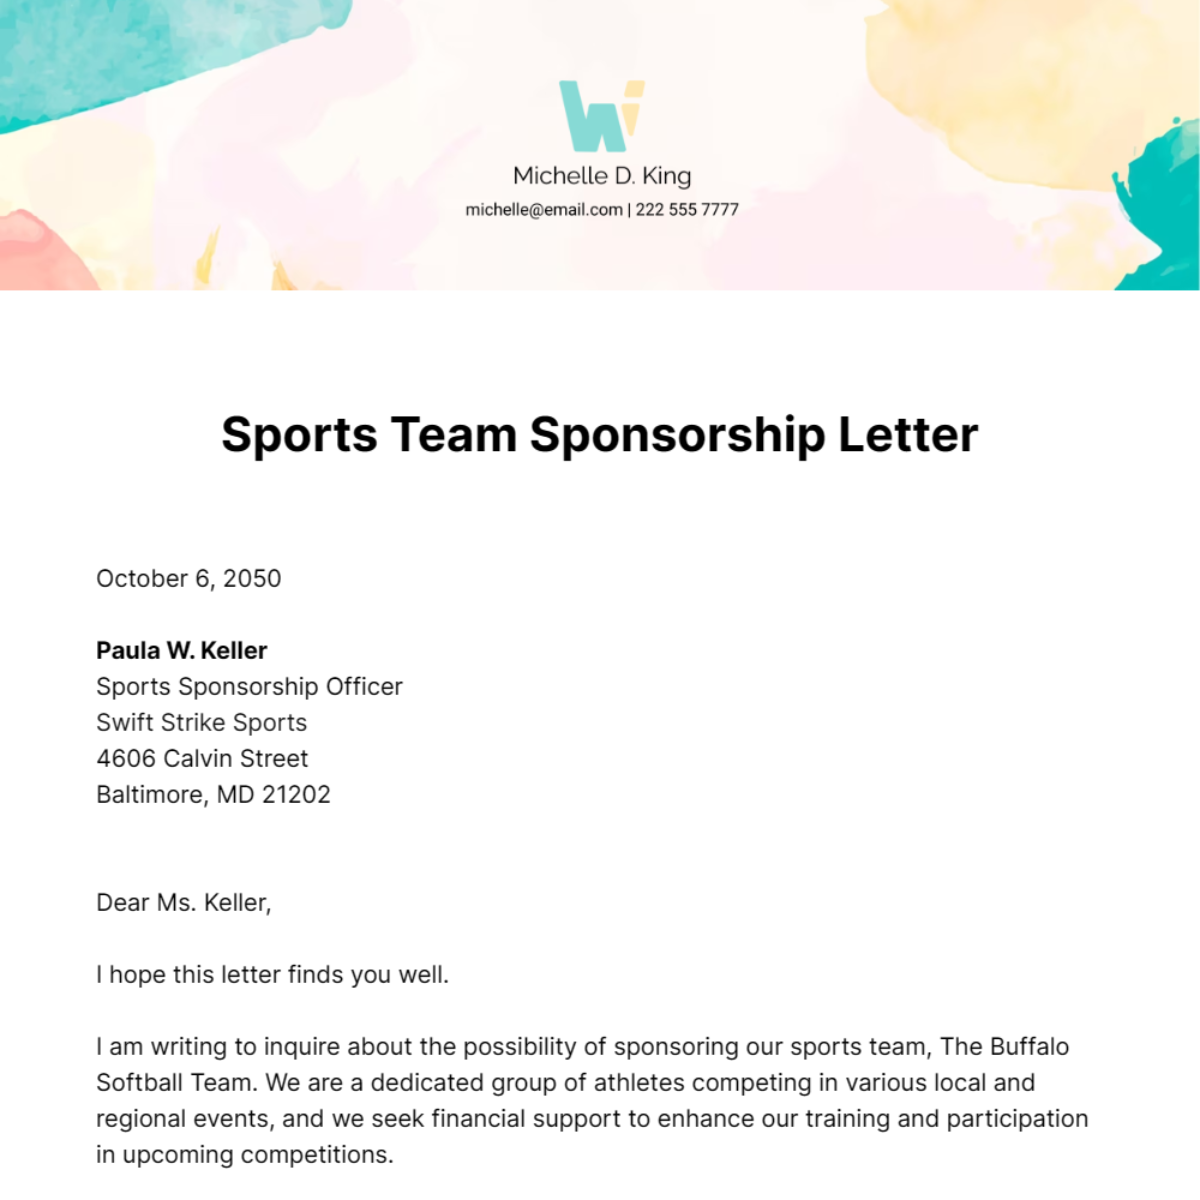 Sponsorship Letter for Sports Team Template